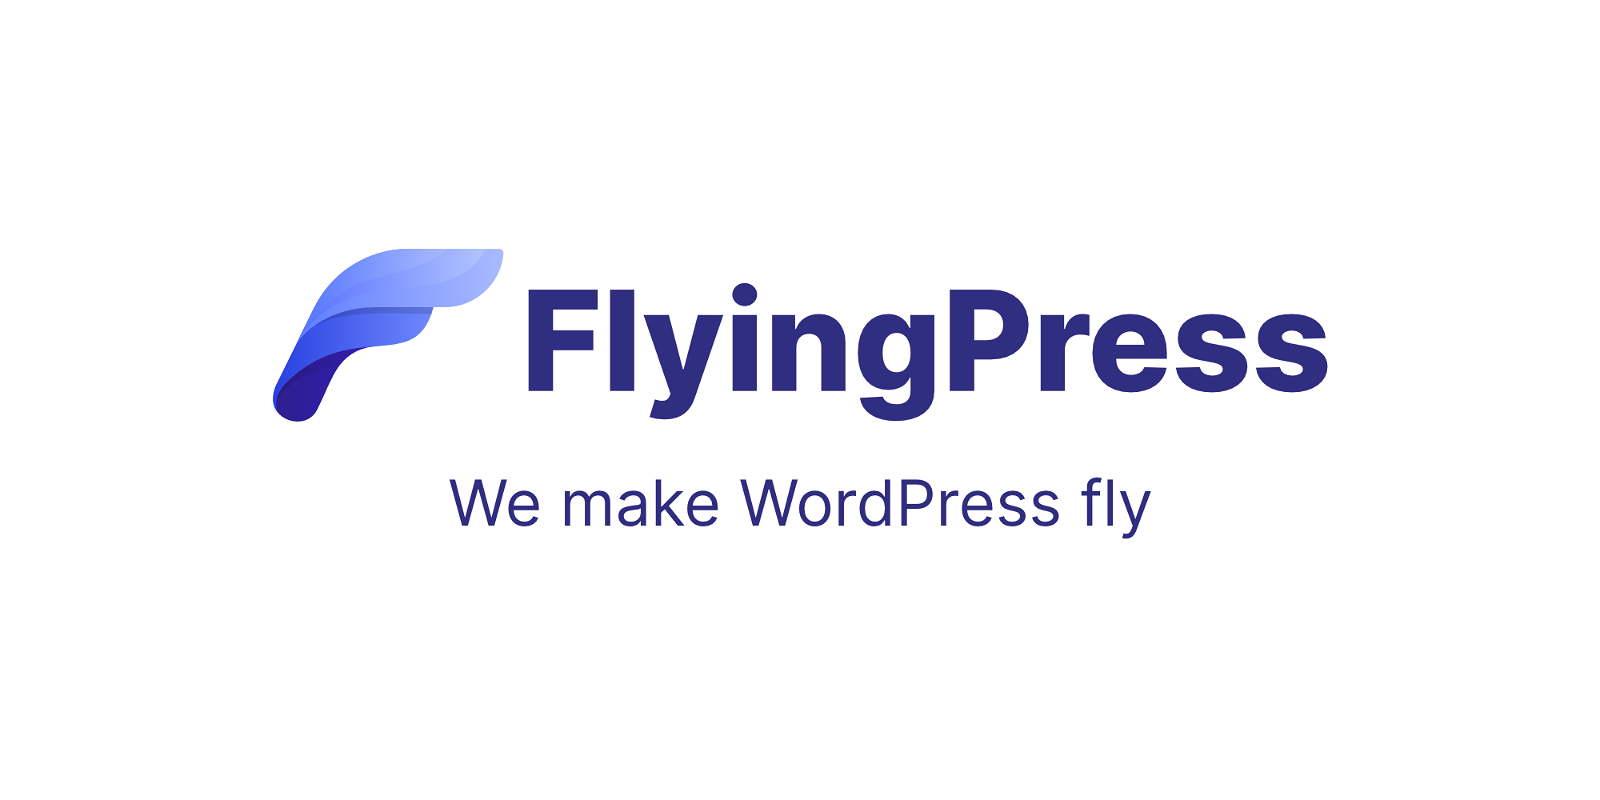 FlyingPress